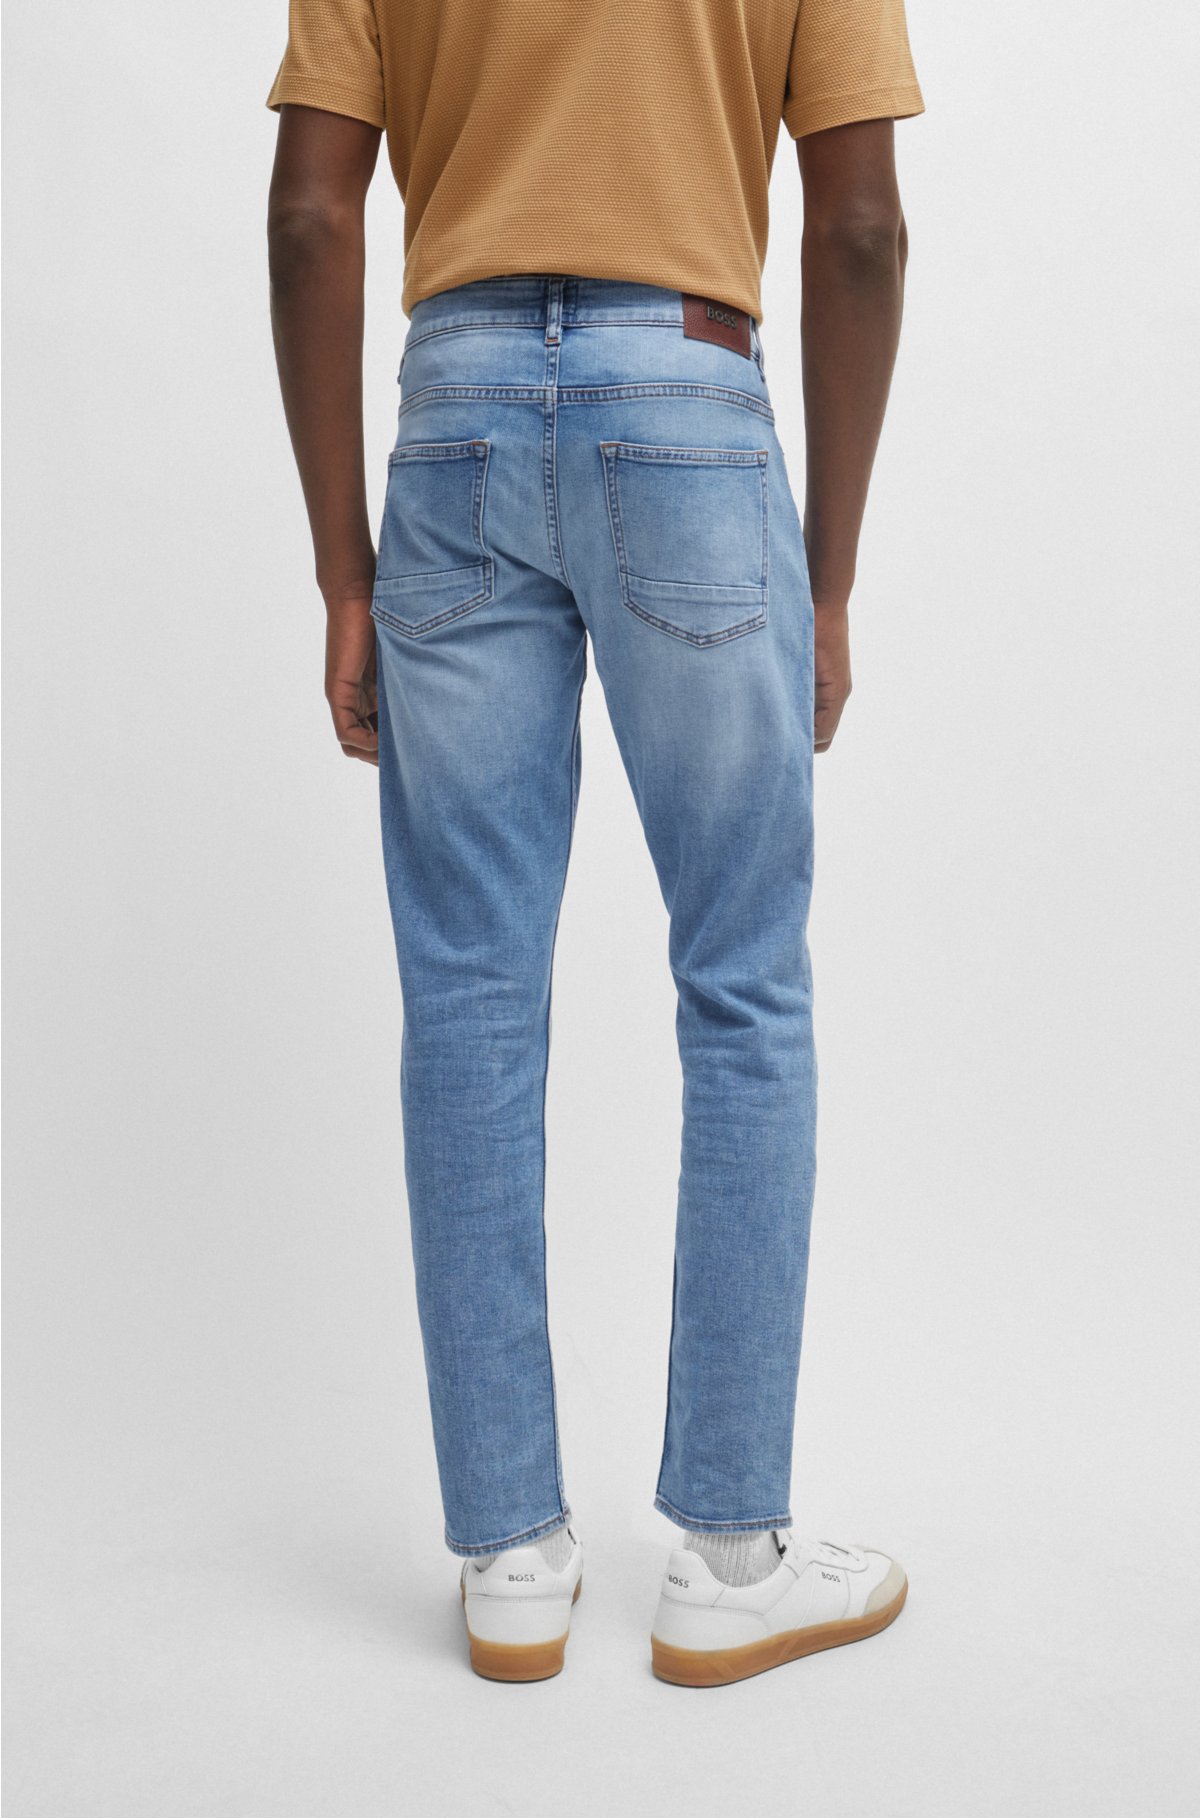 BOSS - Slim-fit jeans in blue denim stretch super-soft